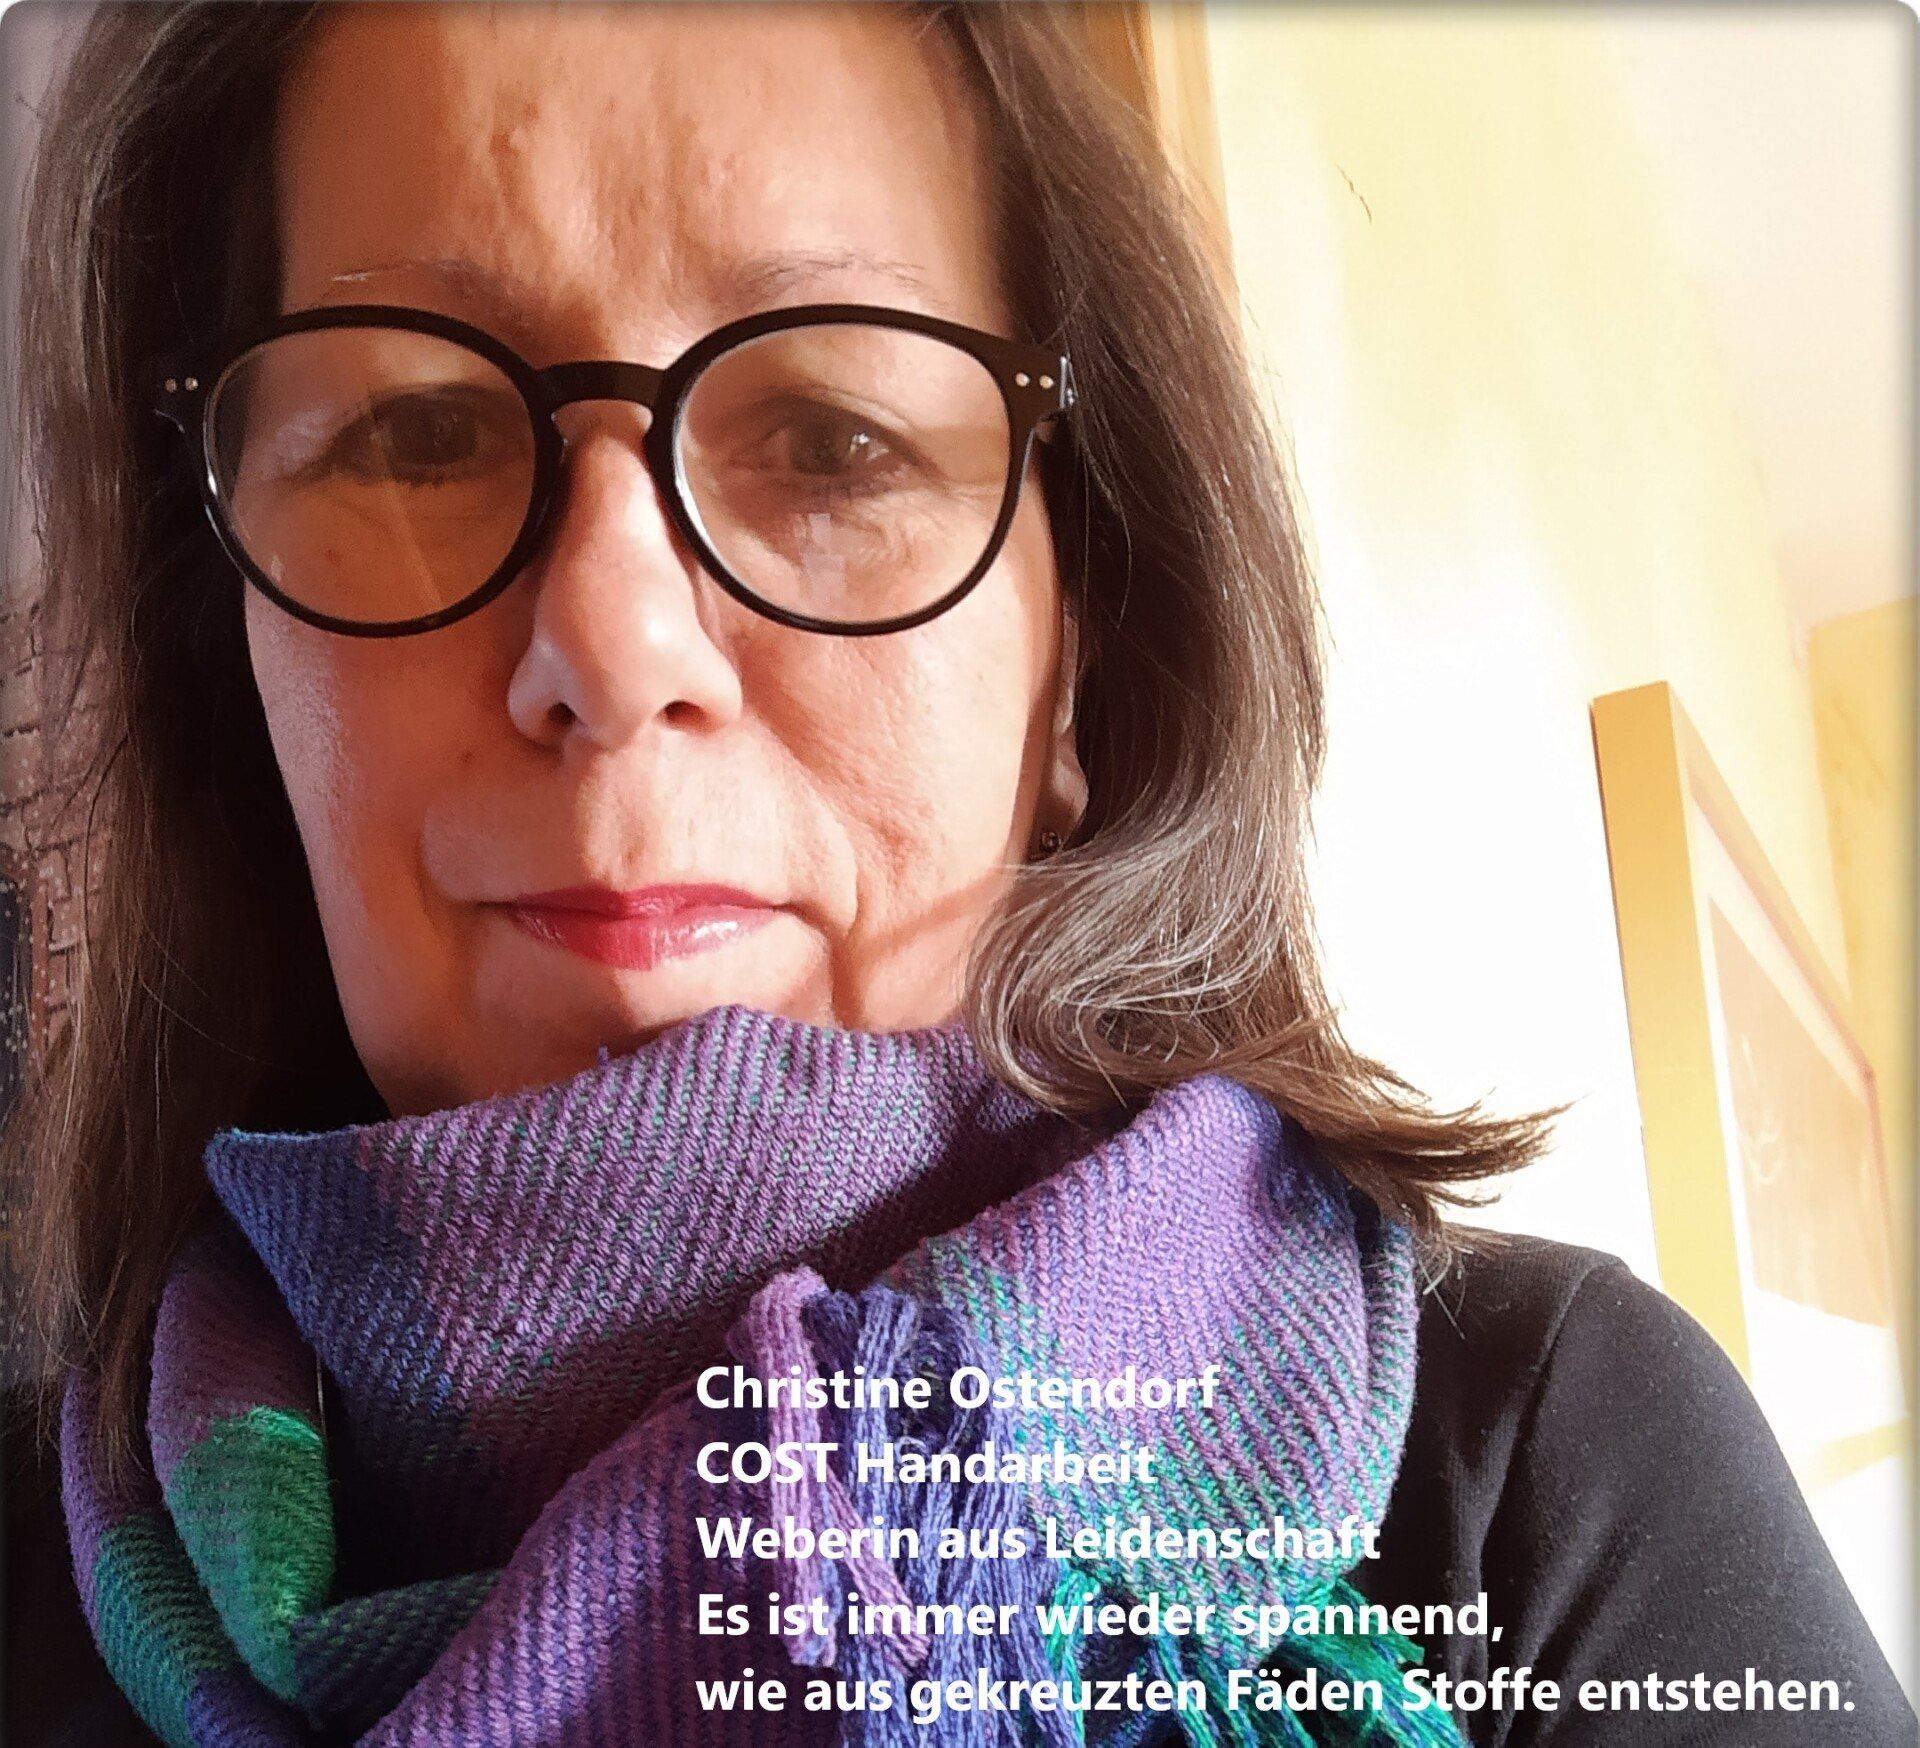 Christine Ostendorfs #12von12 im Oktober 2022: Weben macht glücklich!